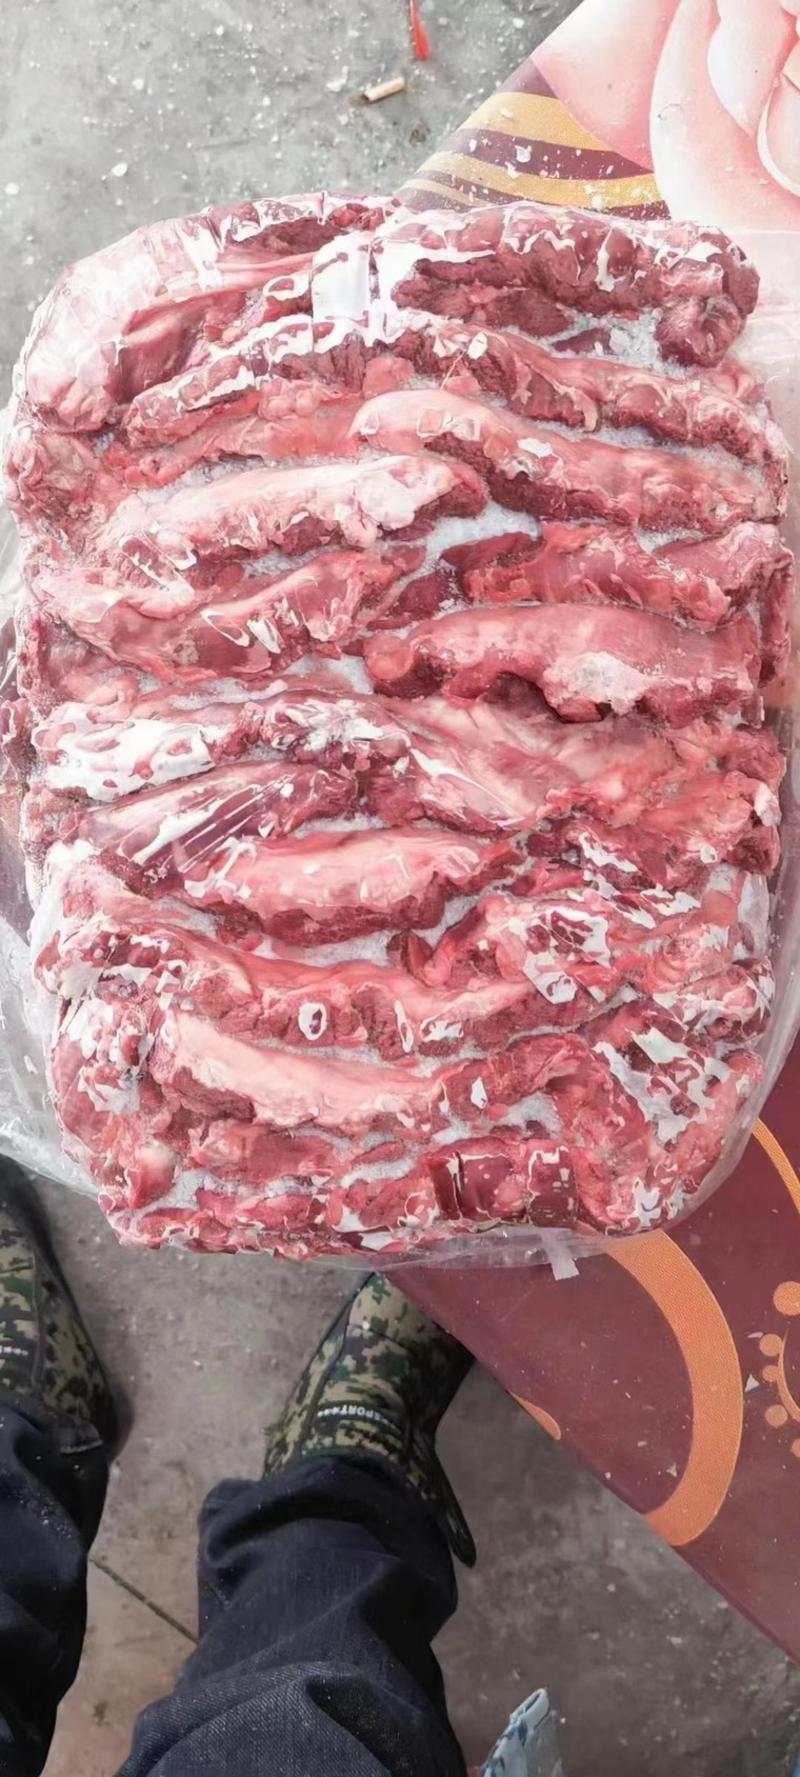 护心肉连肝肉一手货源证件齐全全国发货食材供应